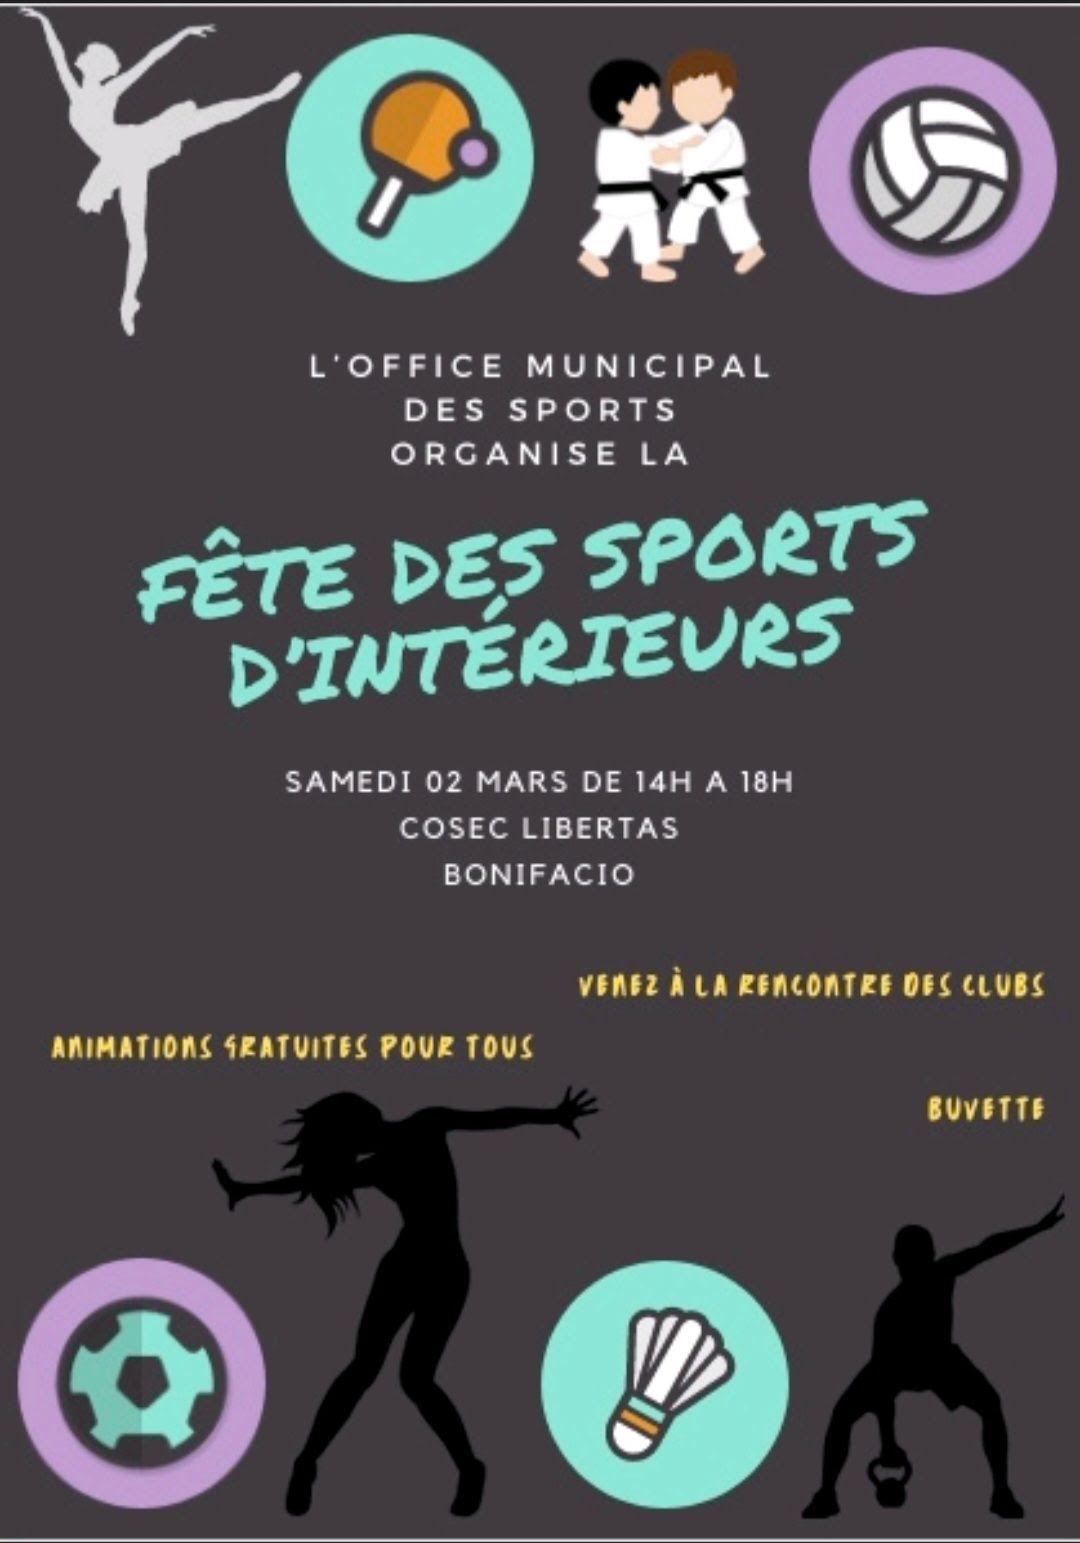 Bonifacio - La 1re Fête des sports d'intérieur !